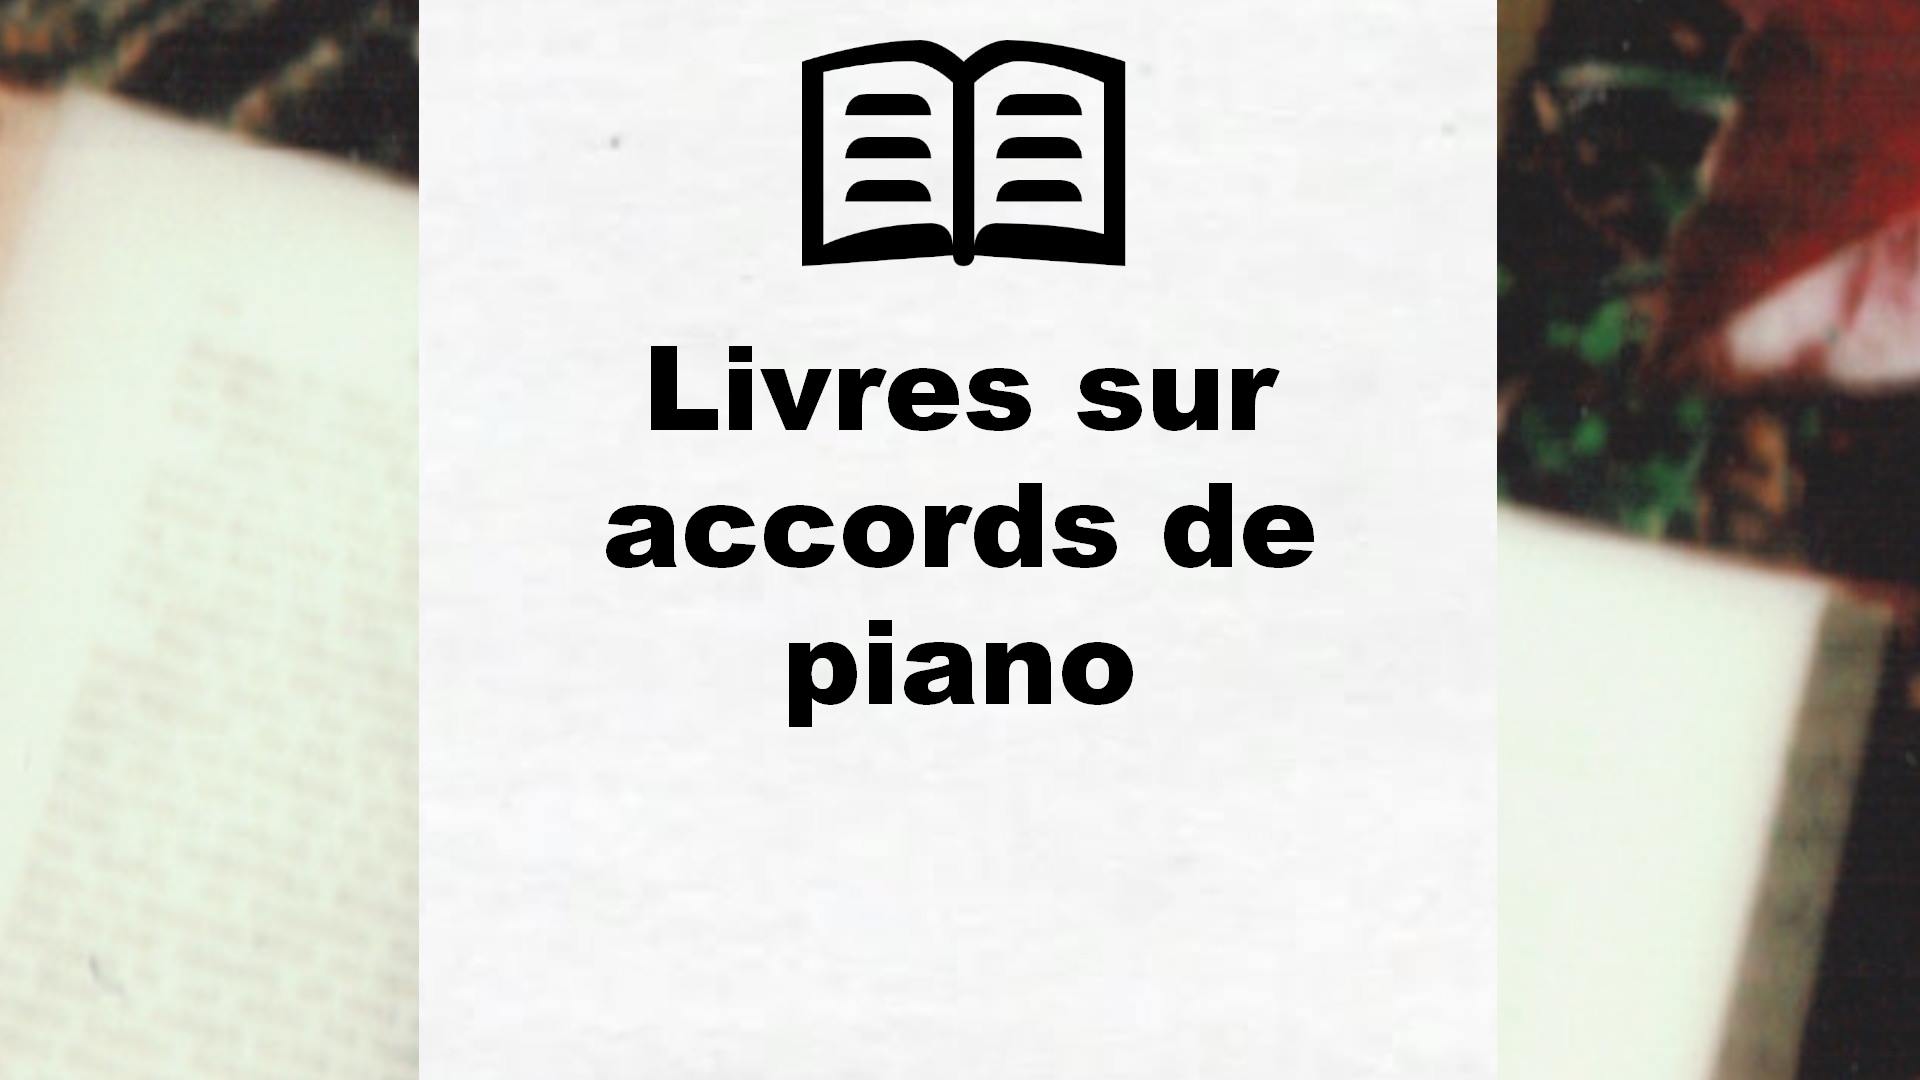 Livres sur accords de piano